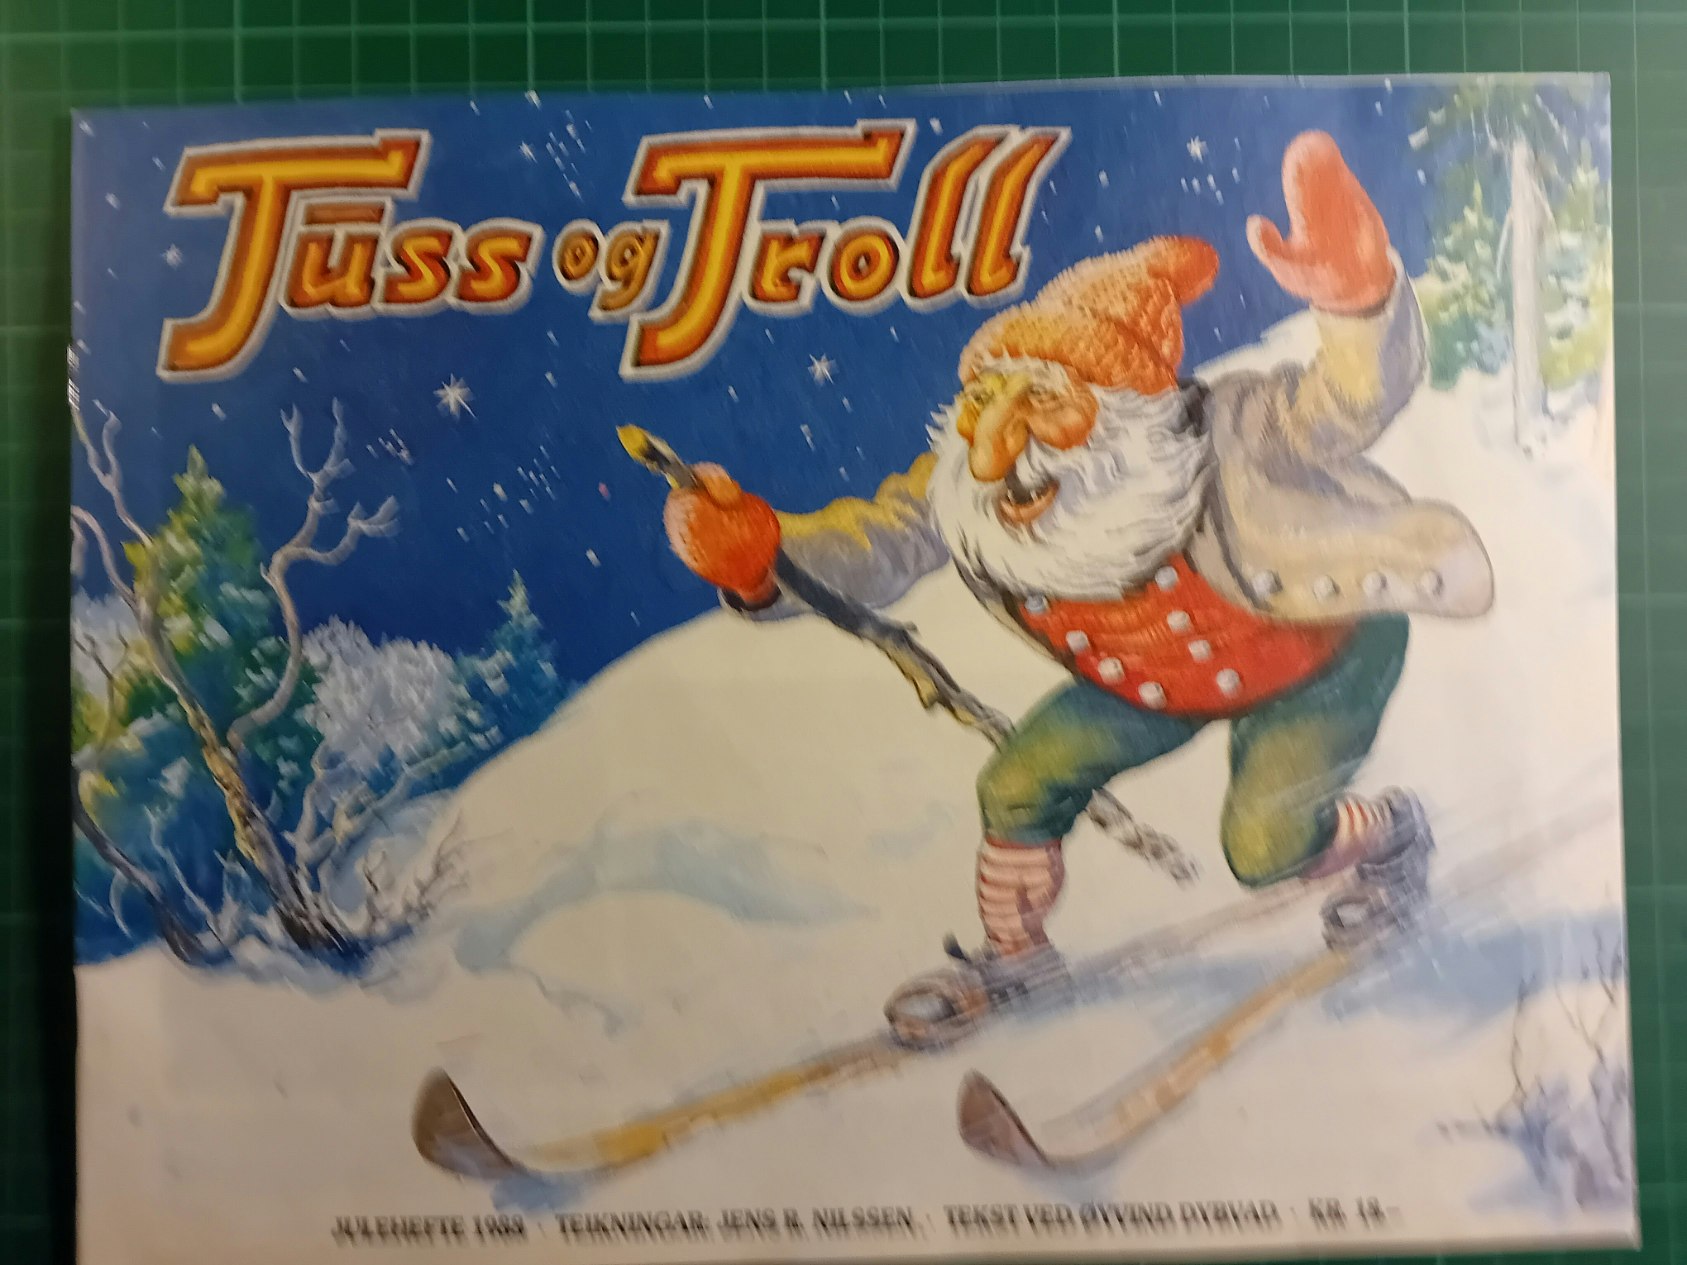 Tuss og Troll Julen 1988